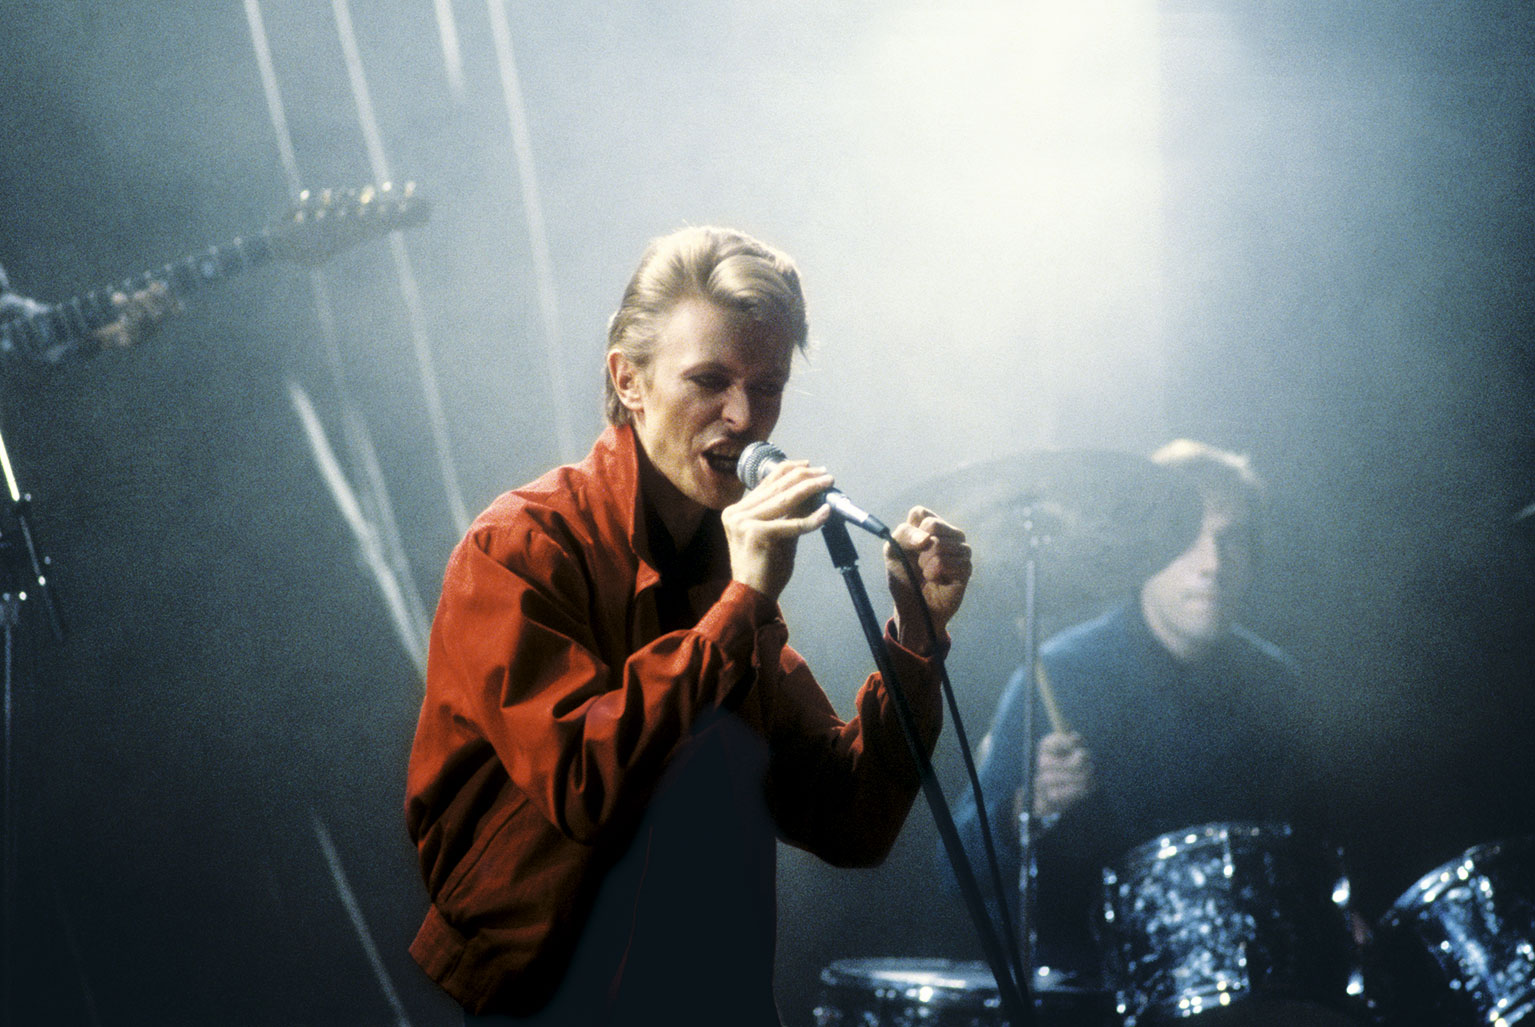 David Bowie em EU, CHRISTIANE F., 13 ANOS, DROGADA E PROSTITUÍDA 